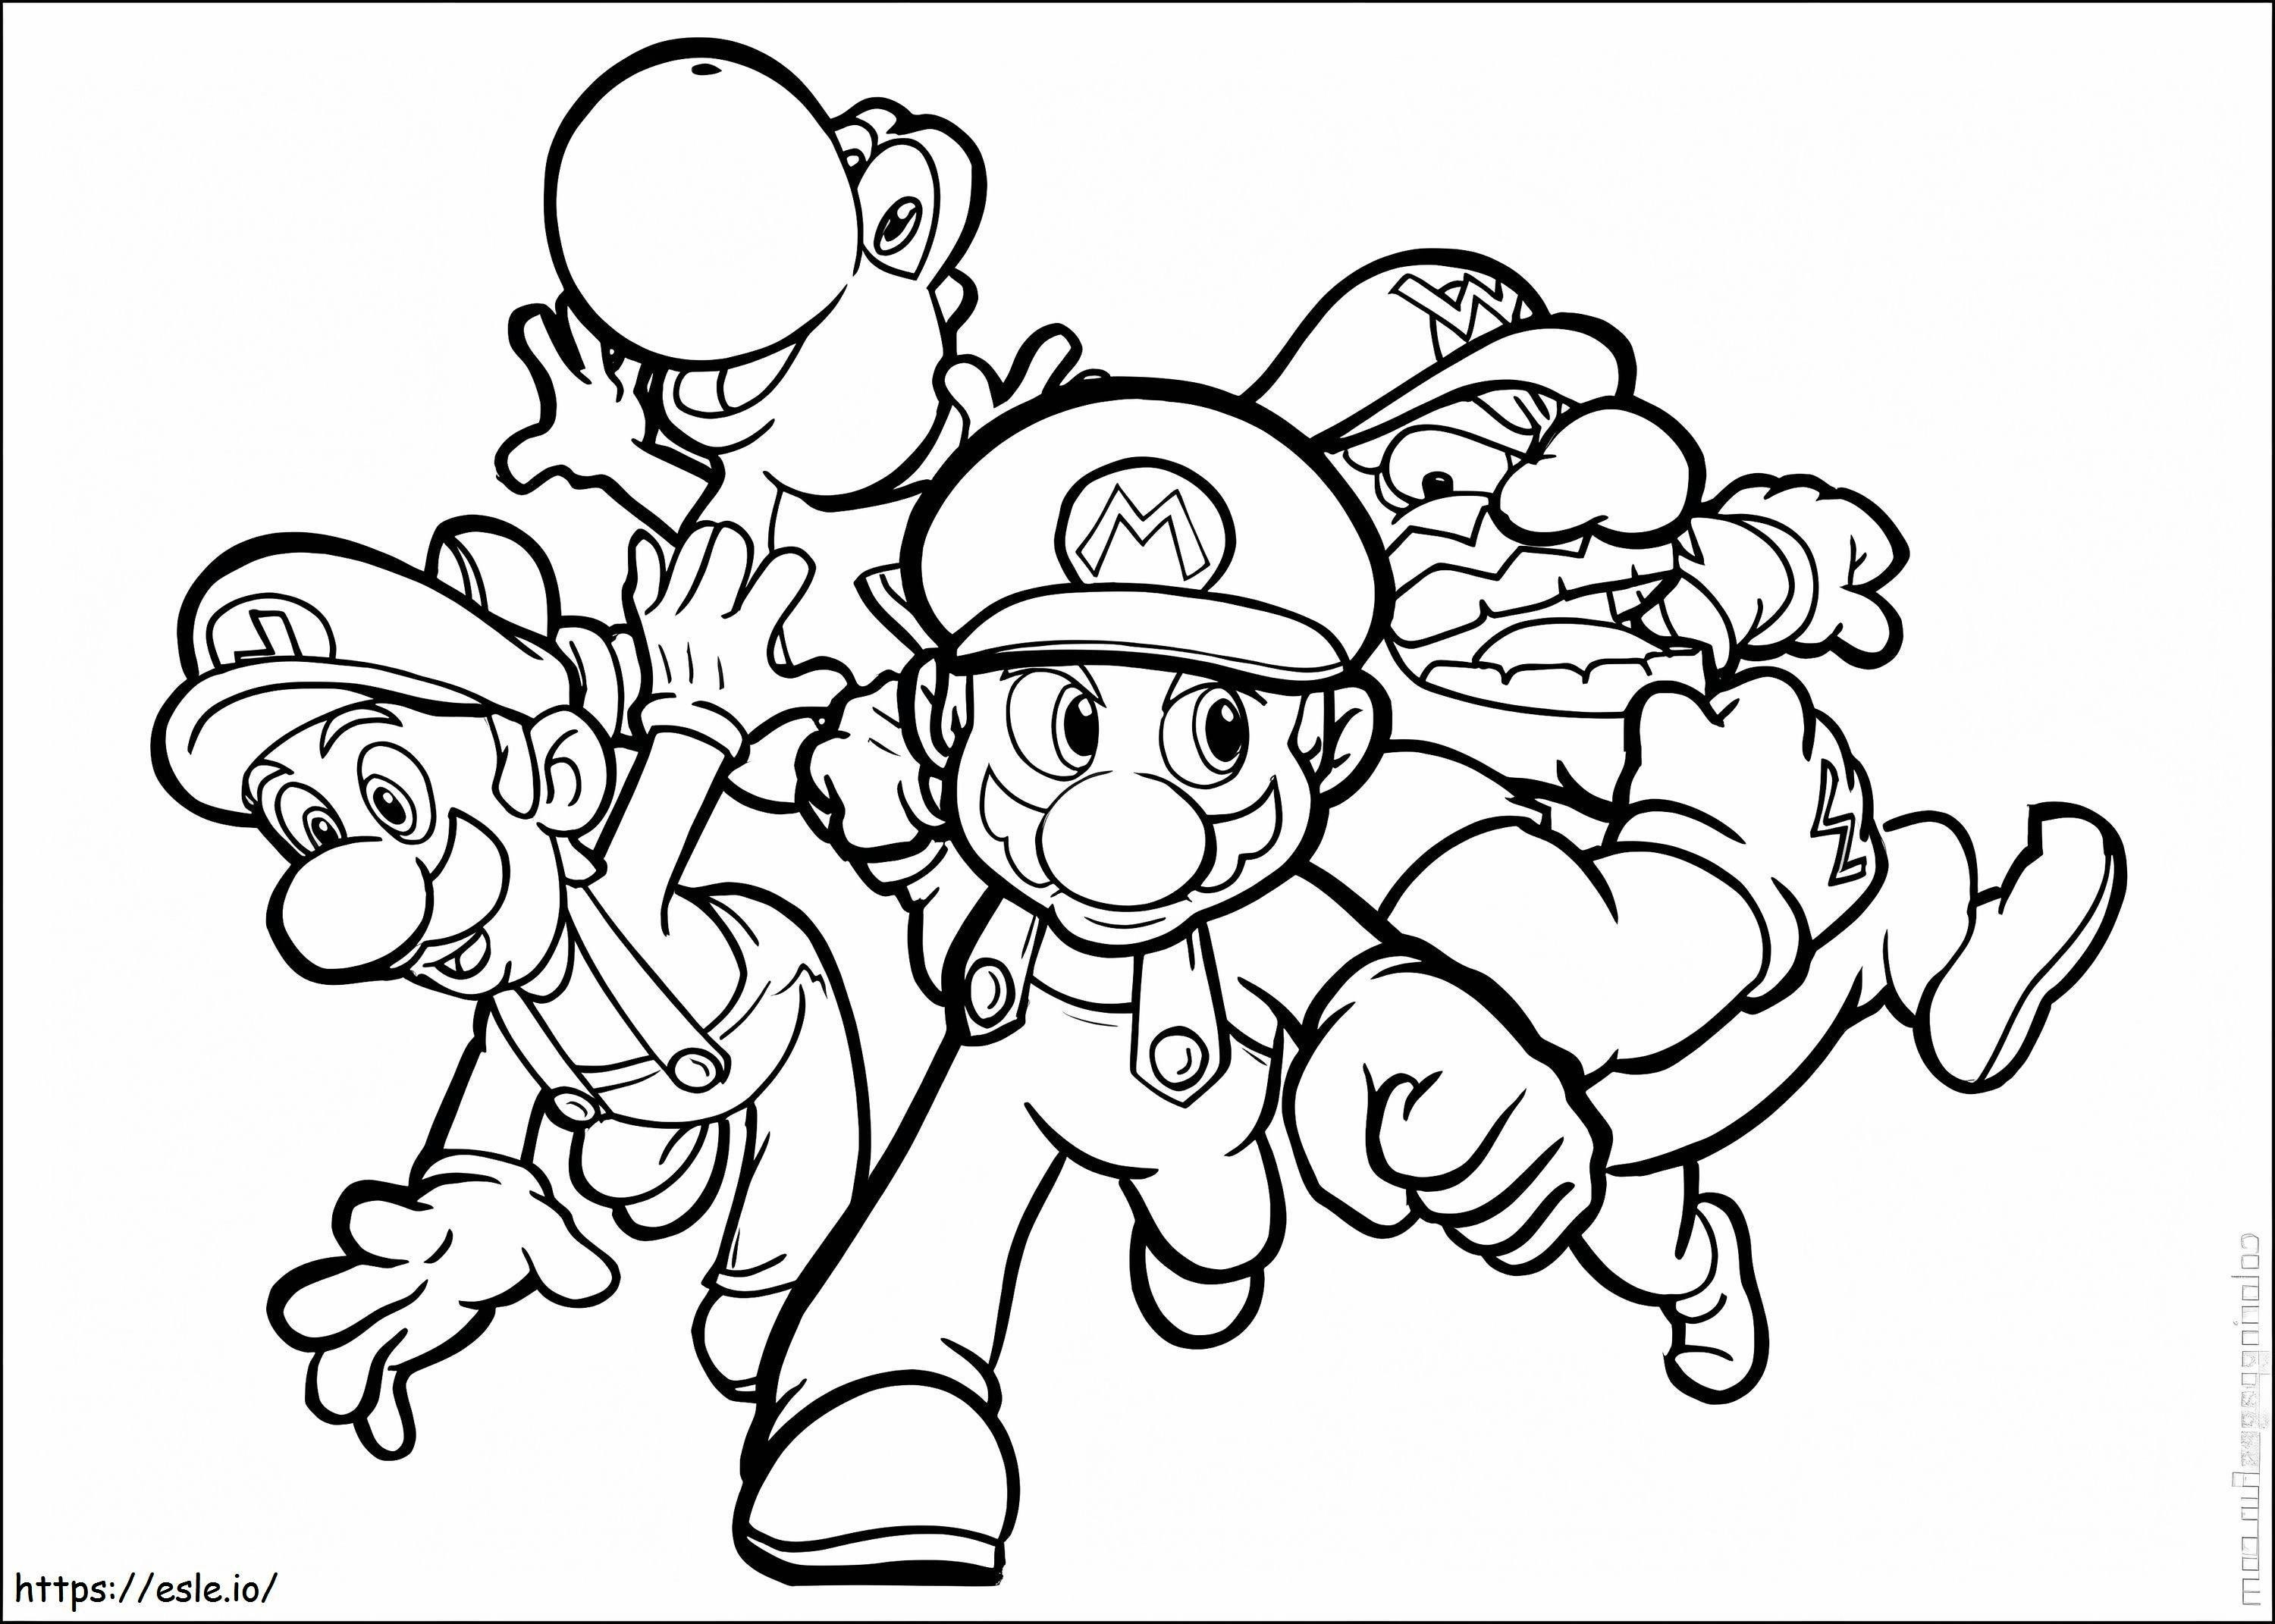 Luigi și prietenii alergând de colorat